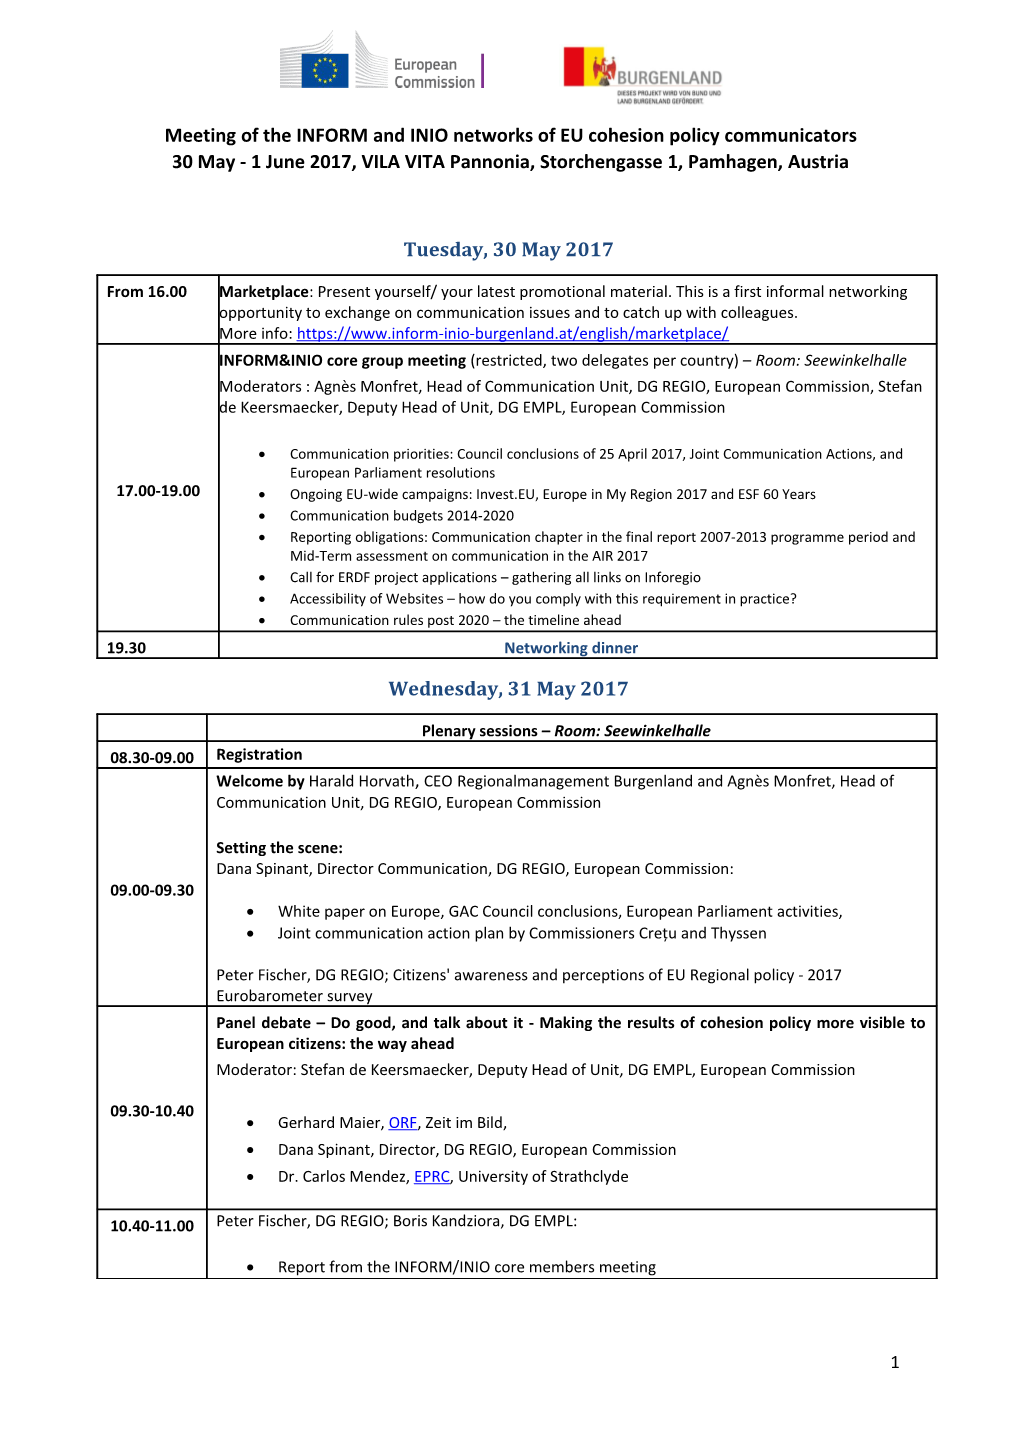 INIO Programme and Agenda